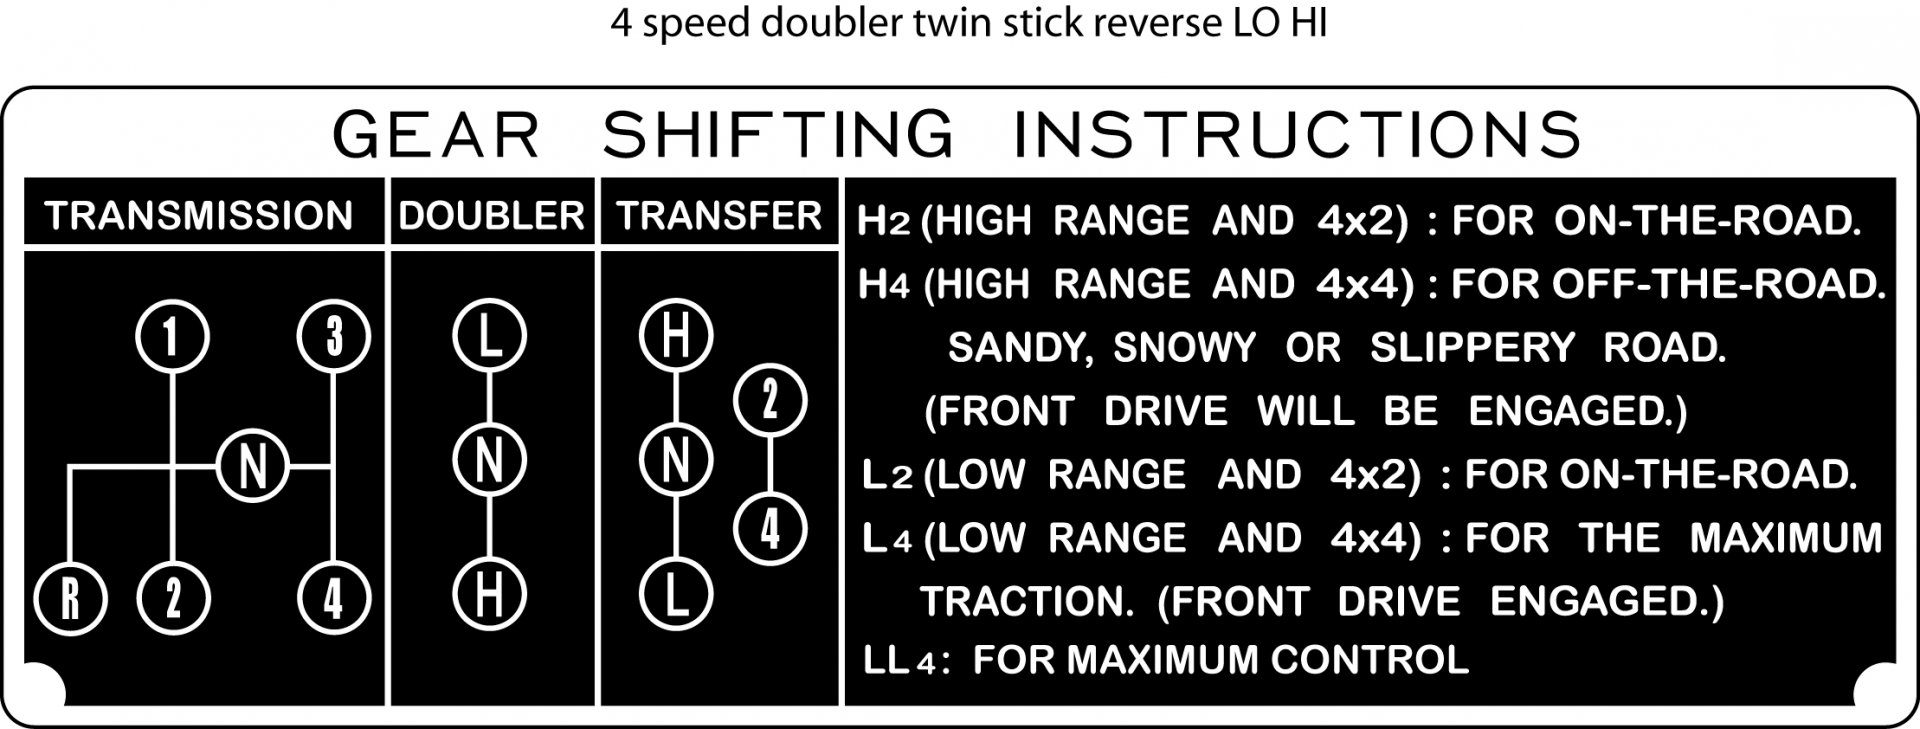 4 speed doubler twin stick reverse LO HI 2.jpg